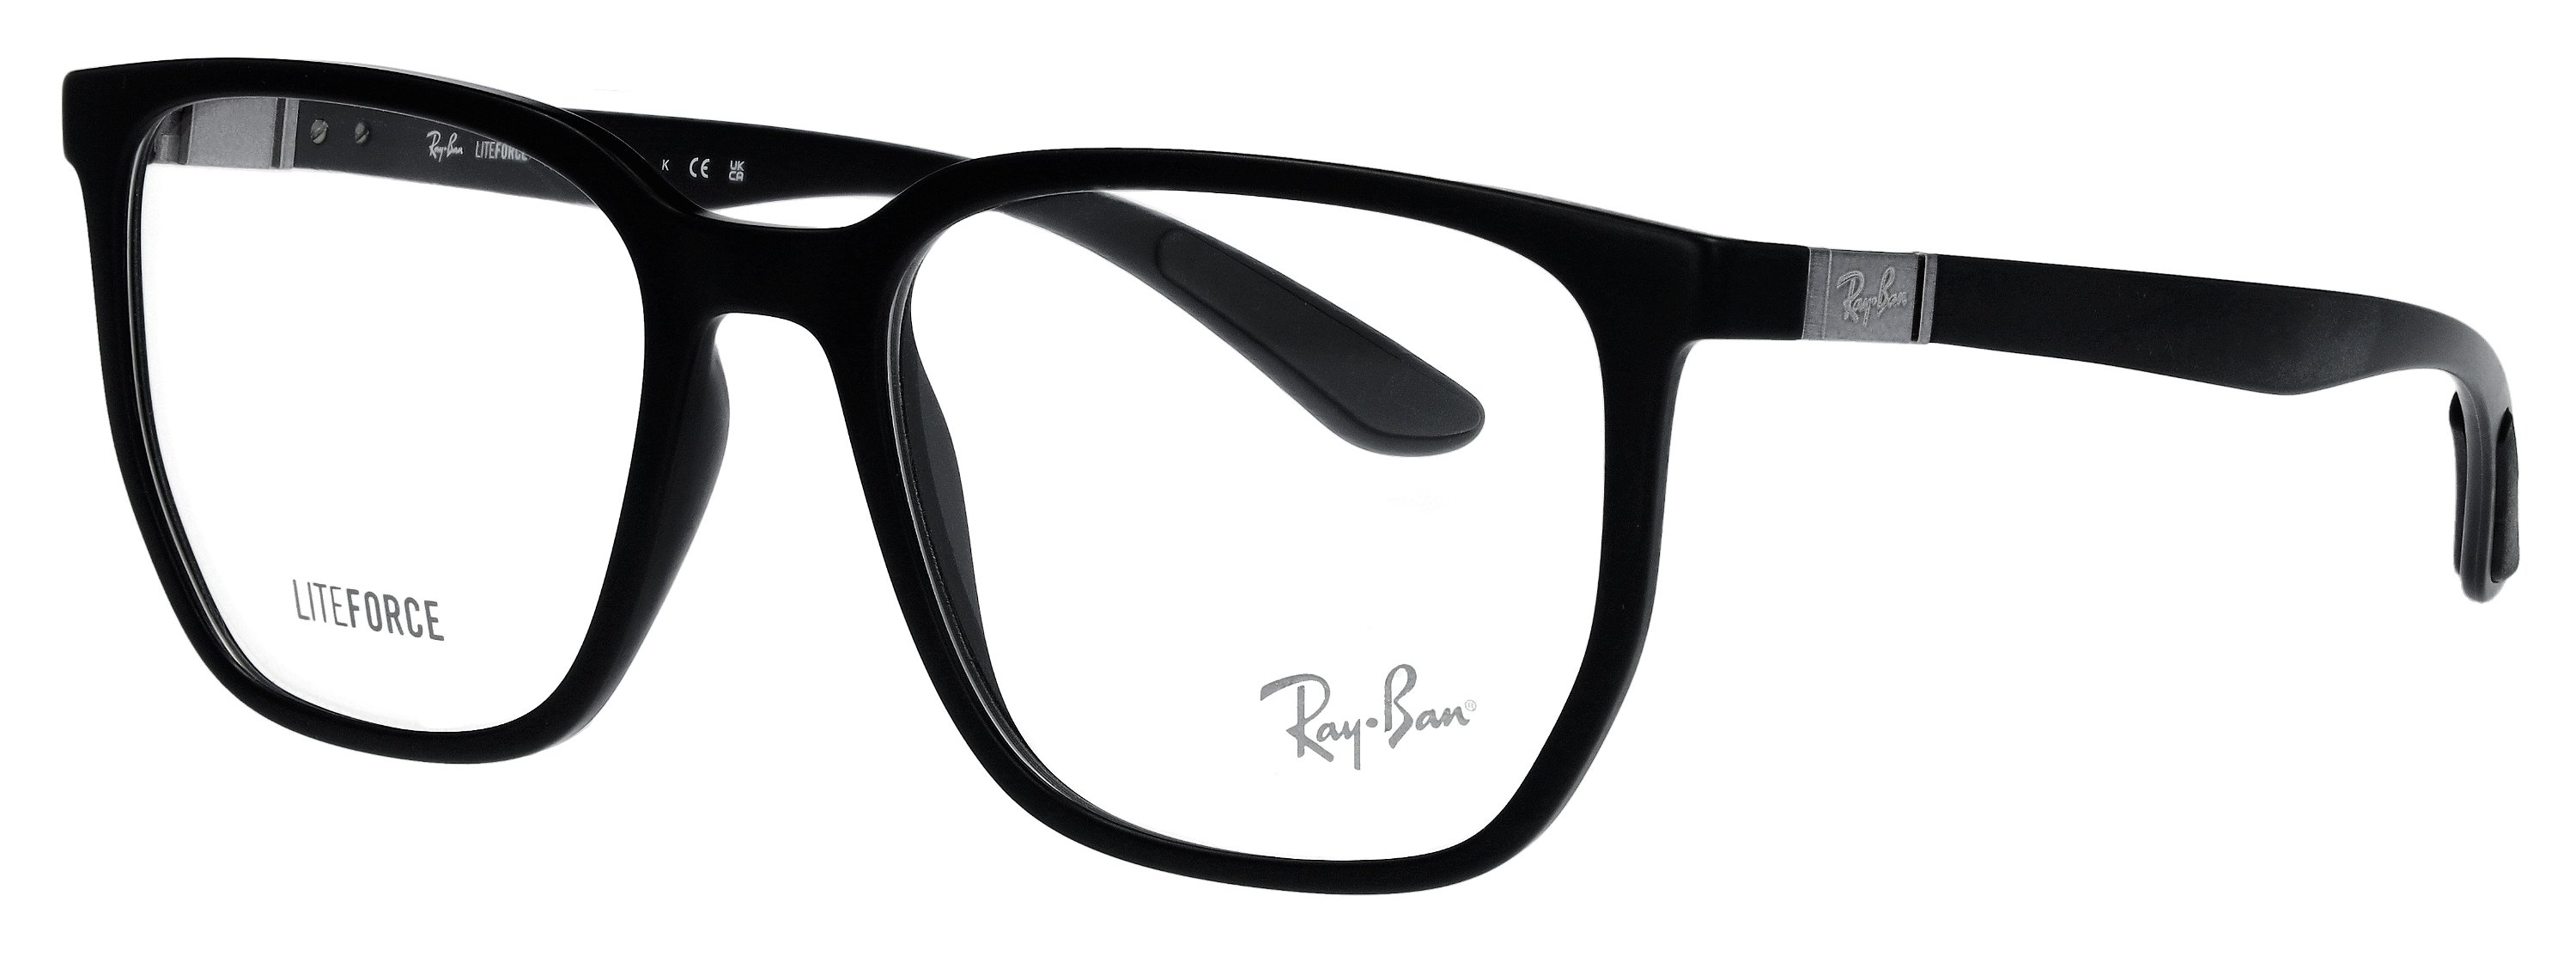 Das Bild zeigt die Korrektionsbrille RX7235 5204 von der Marke Ray Ban in Sand schwarz.